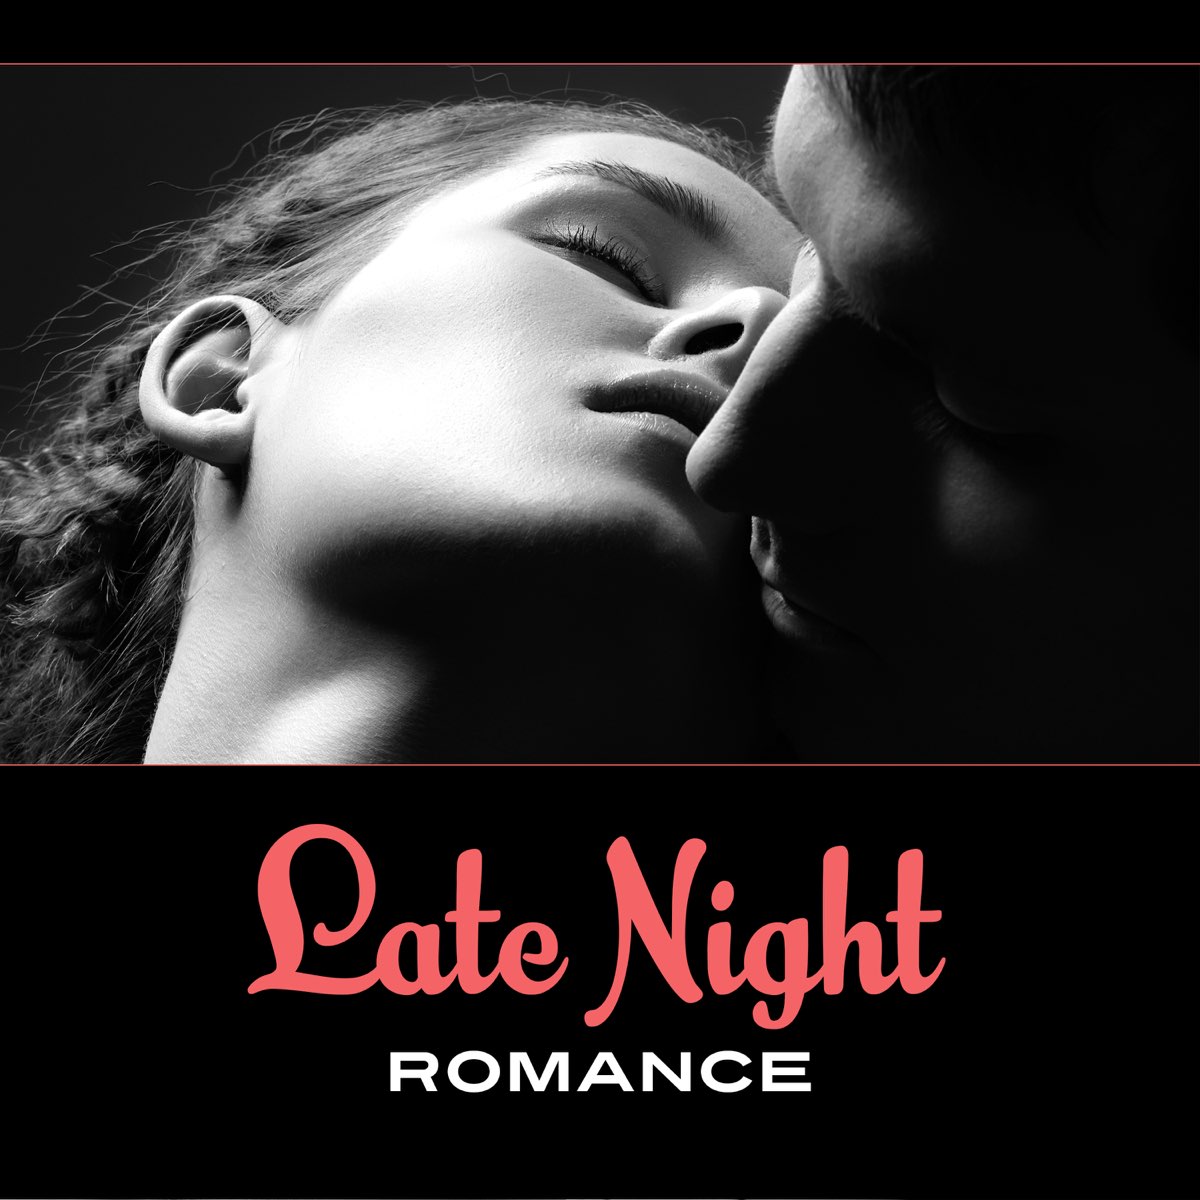 Night Romance. Romantic Music. Romance music